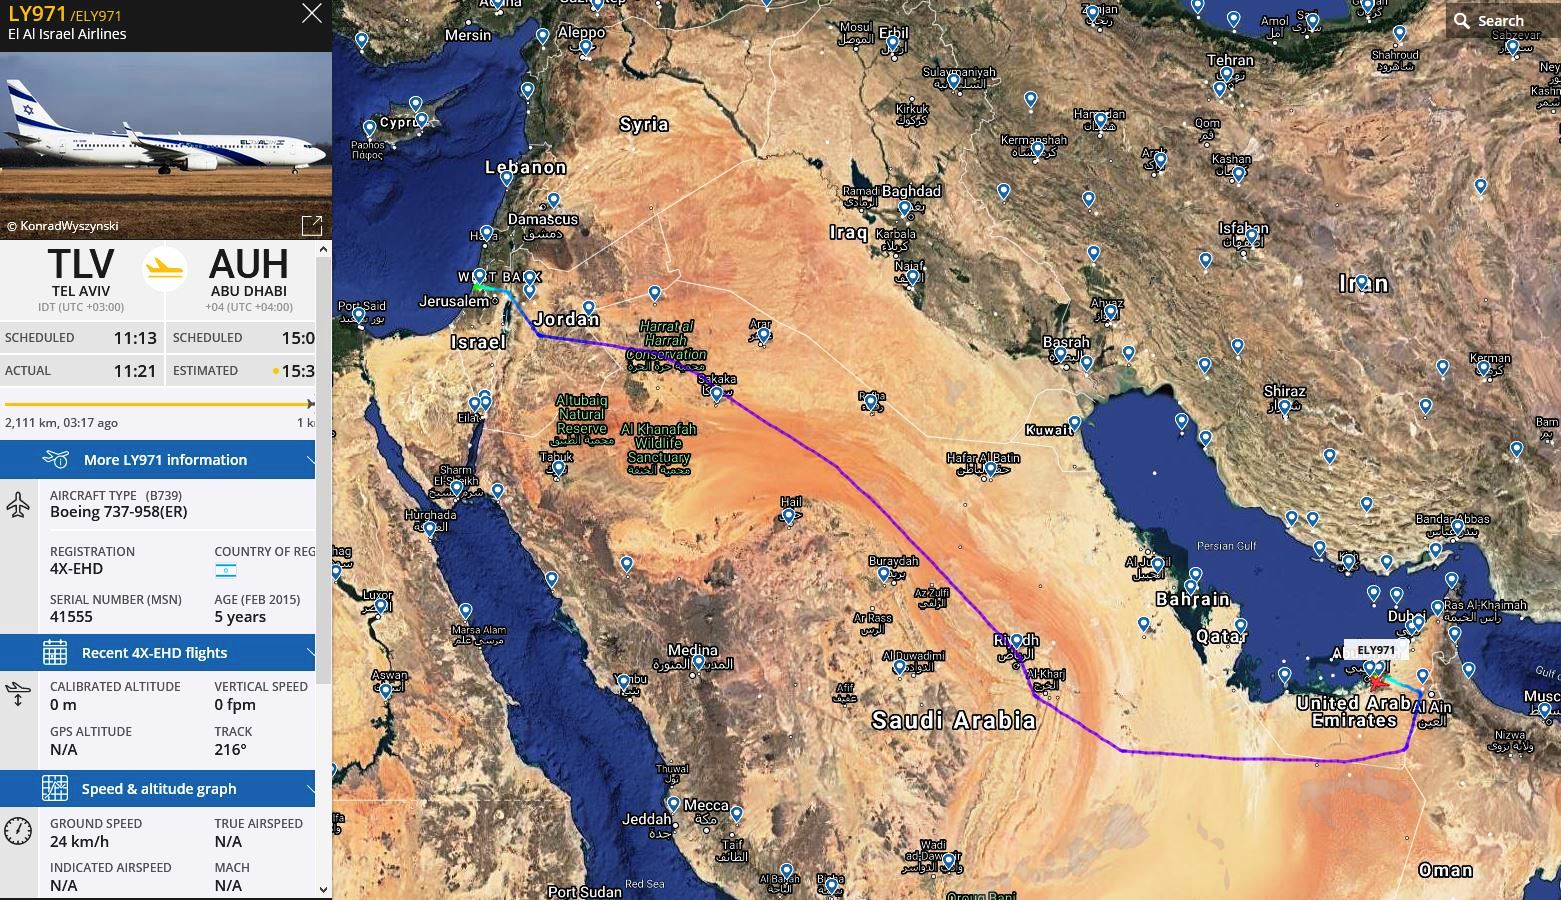 ABD Heyetini taşıyan El Al uçağının Tel Aviv - Dubai uçuşu (31 Ağustos 2020)